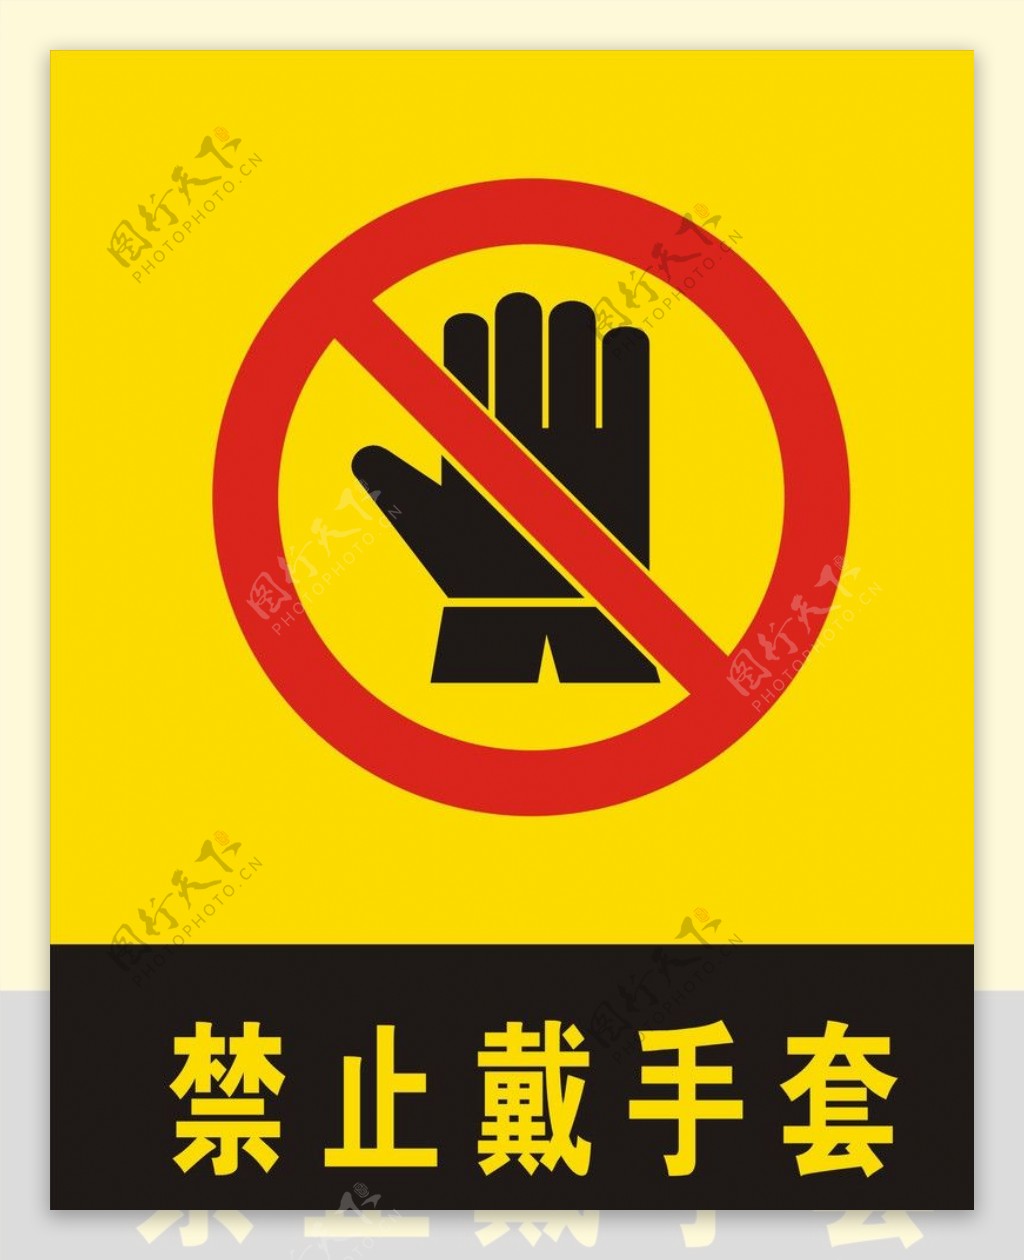 禁止戴手套图片